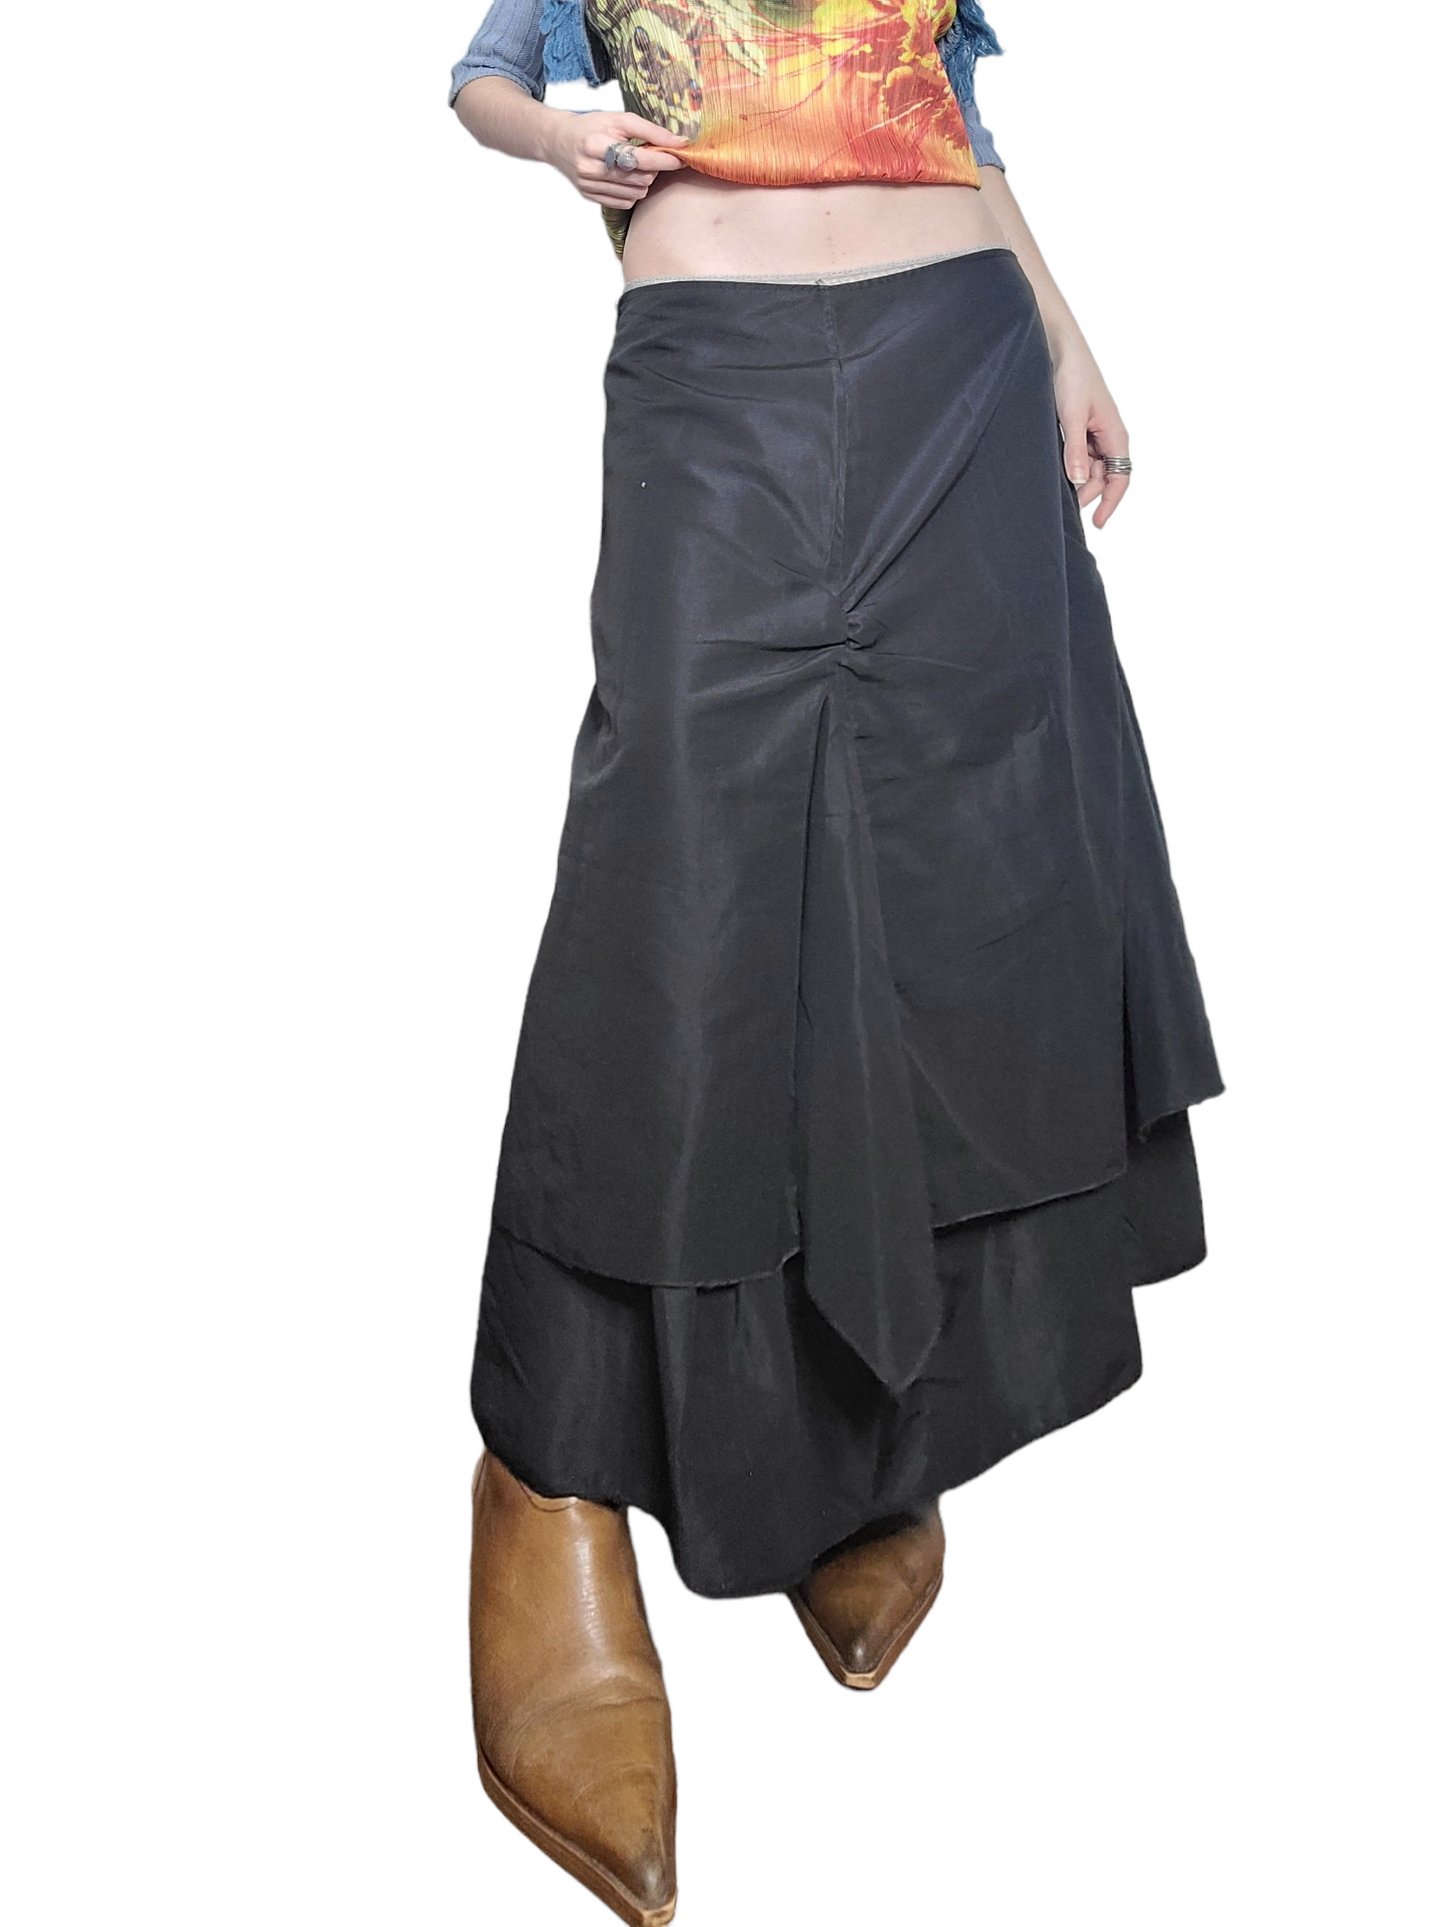 Longue jupe fairygrunge noire